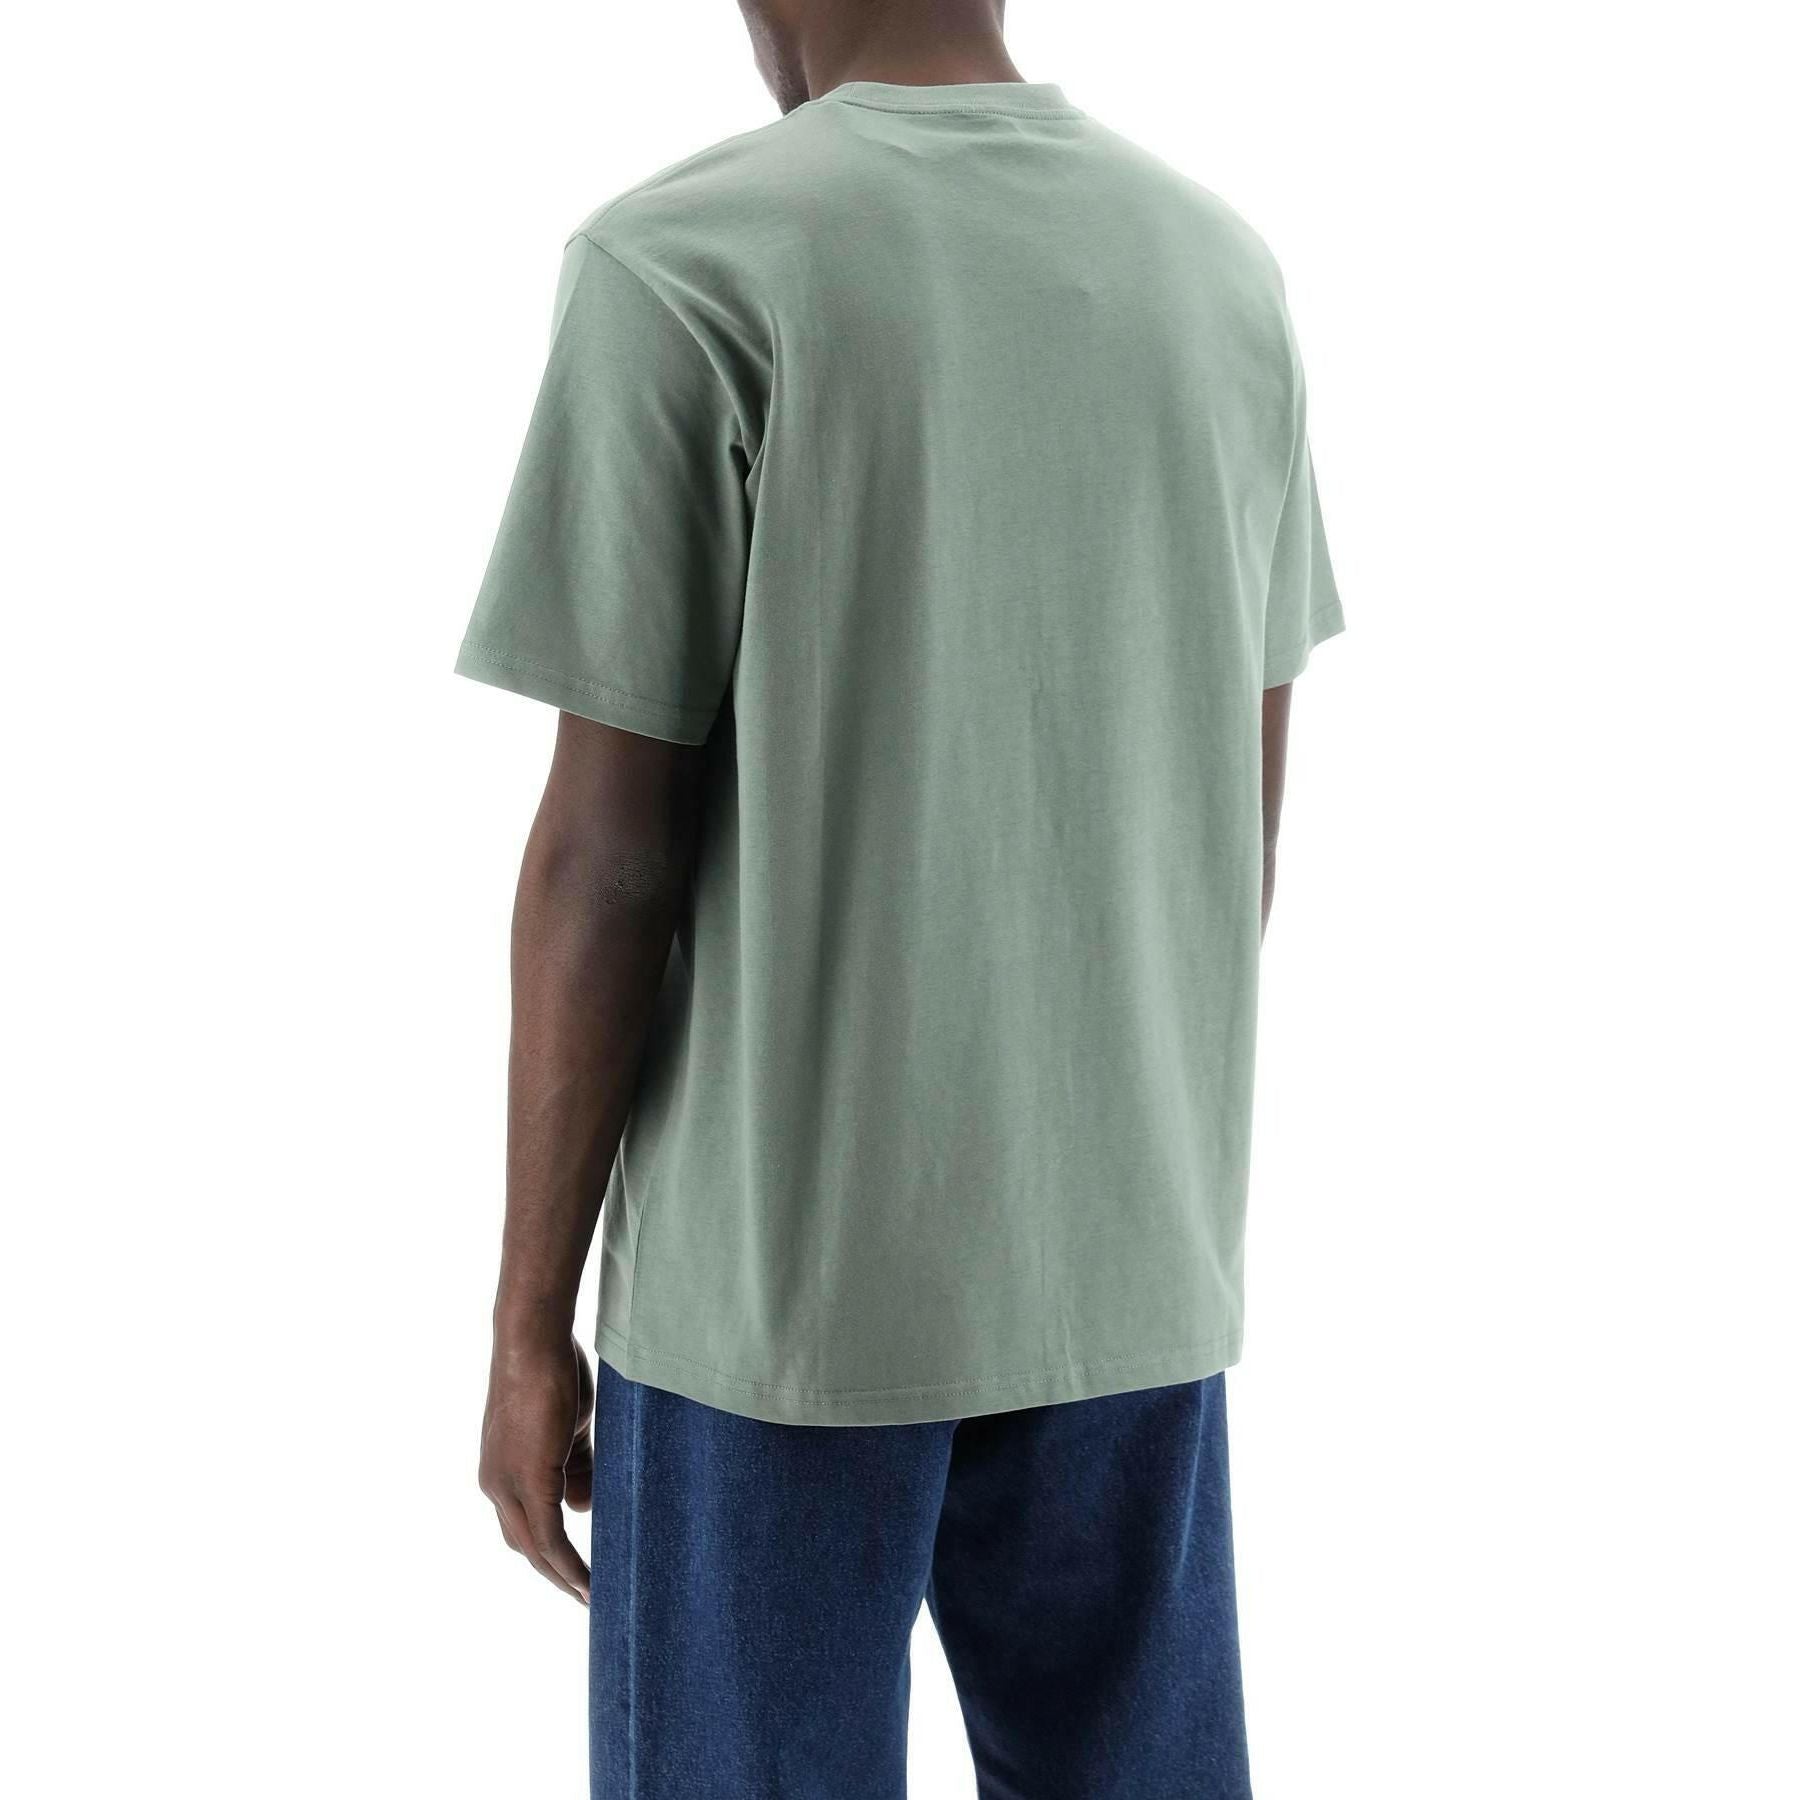 Park Green Cotton T-Shirt with Chest Pocket CARHARTT WIP JOHN JULIA.